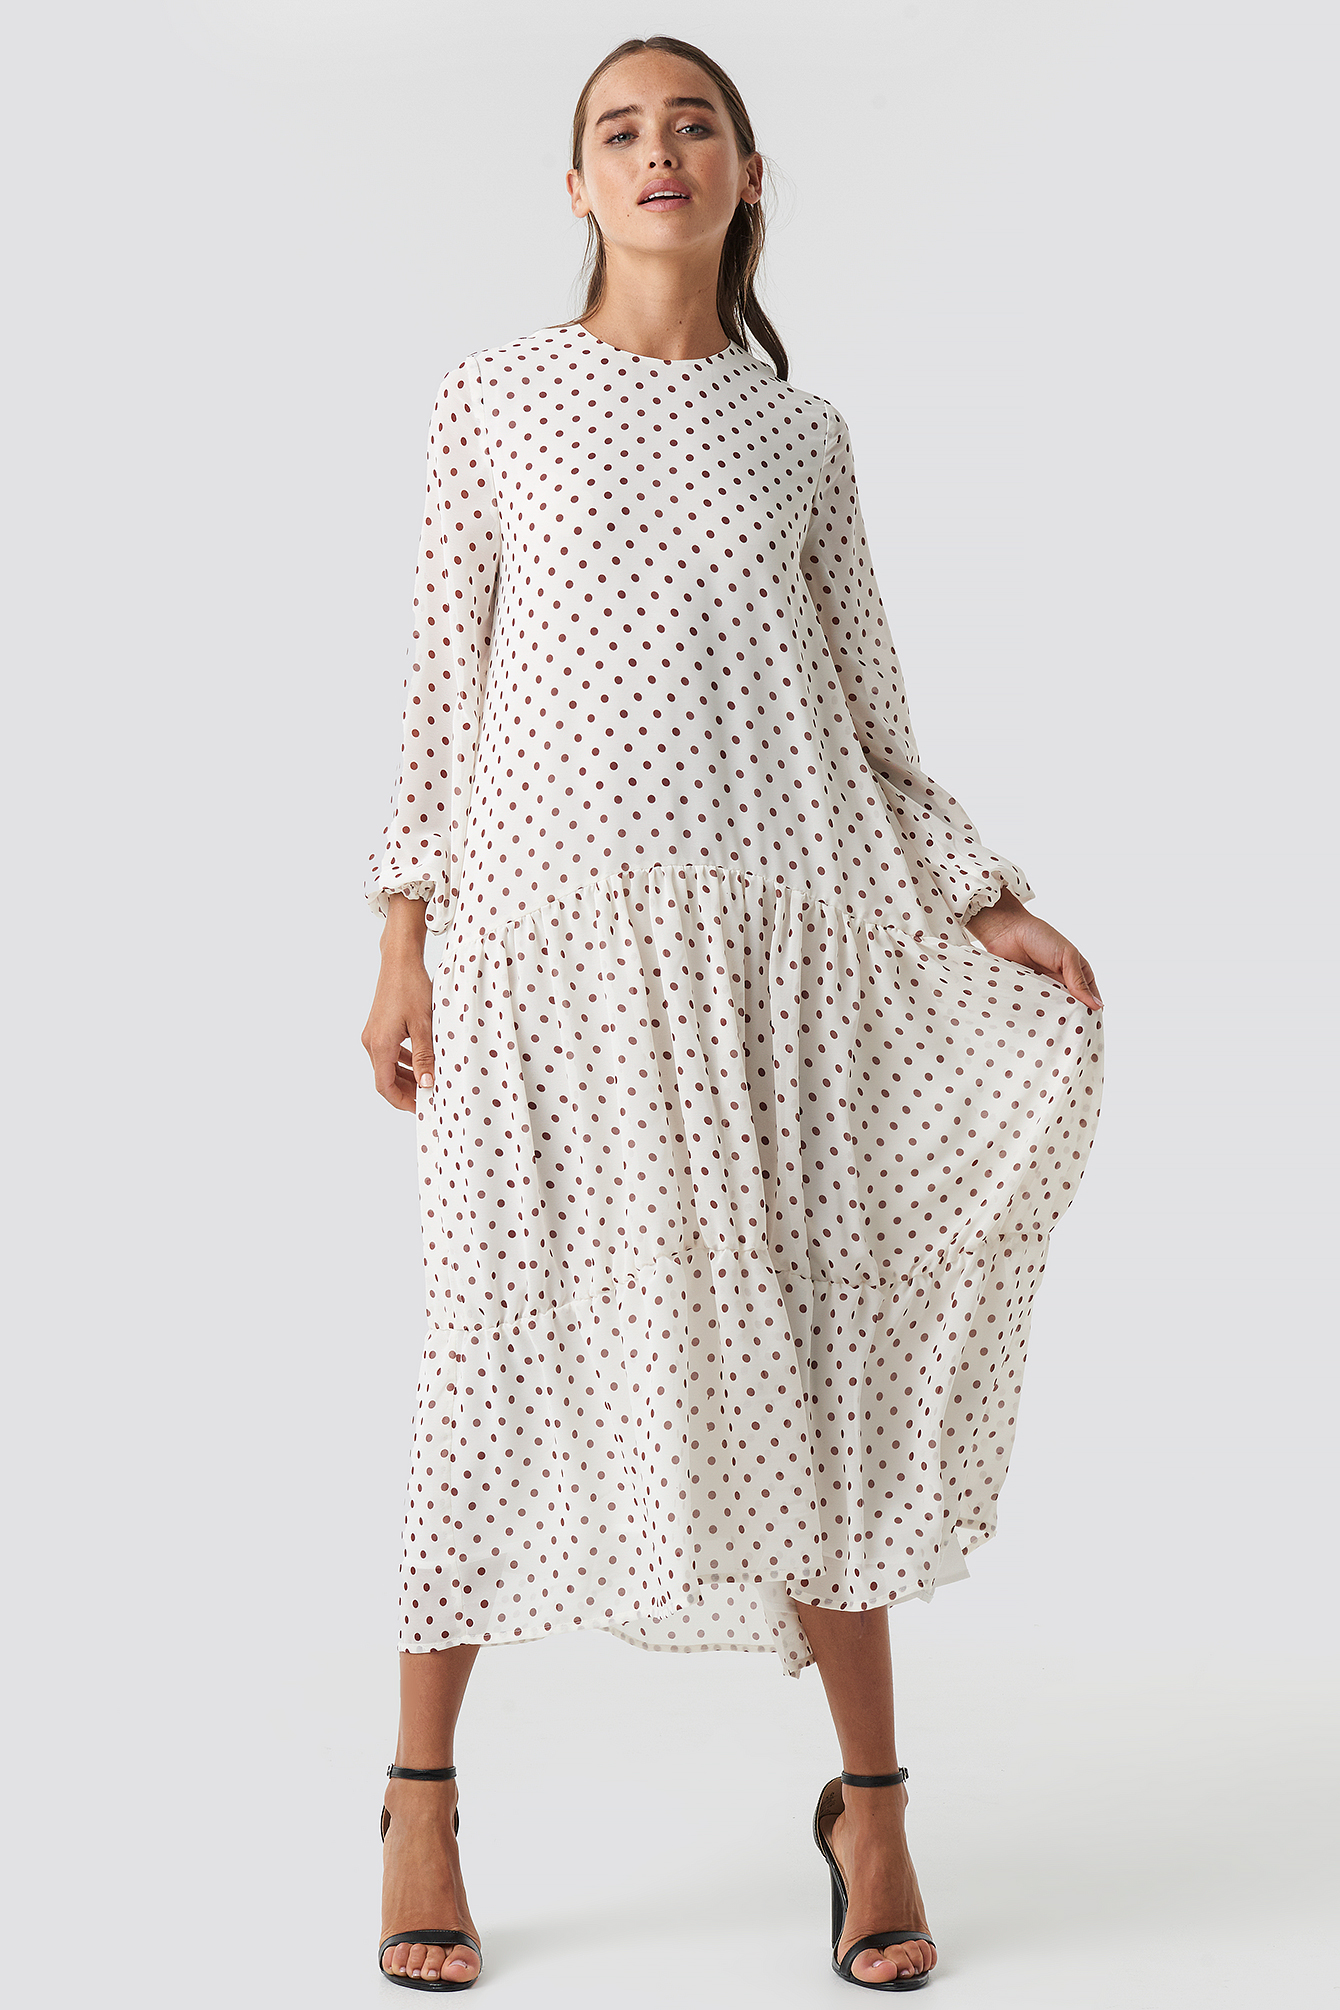 White/Burgundy Dots NA-KD Boho Dotted Ruffle Chiffon Dress